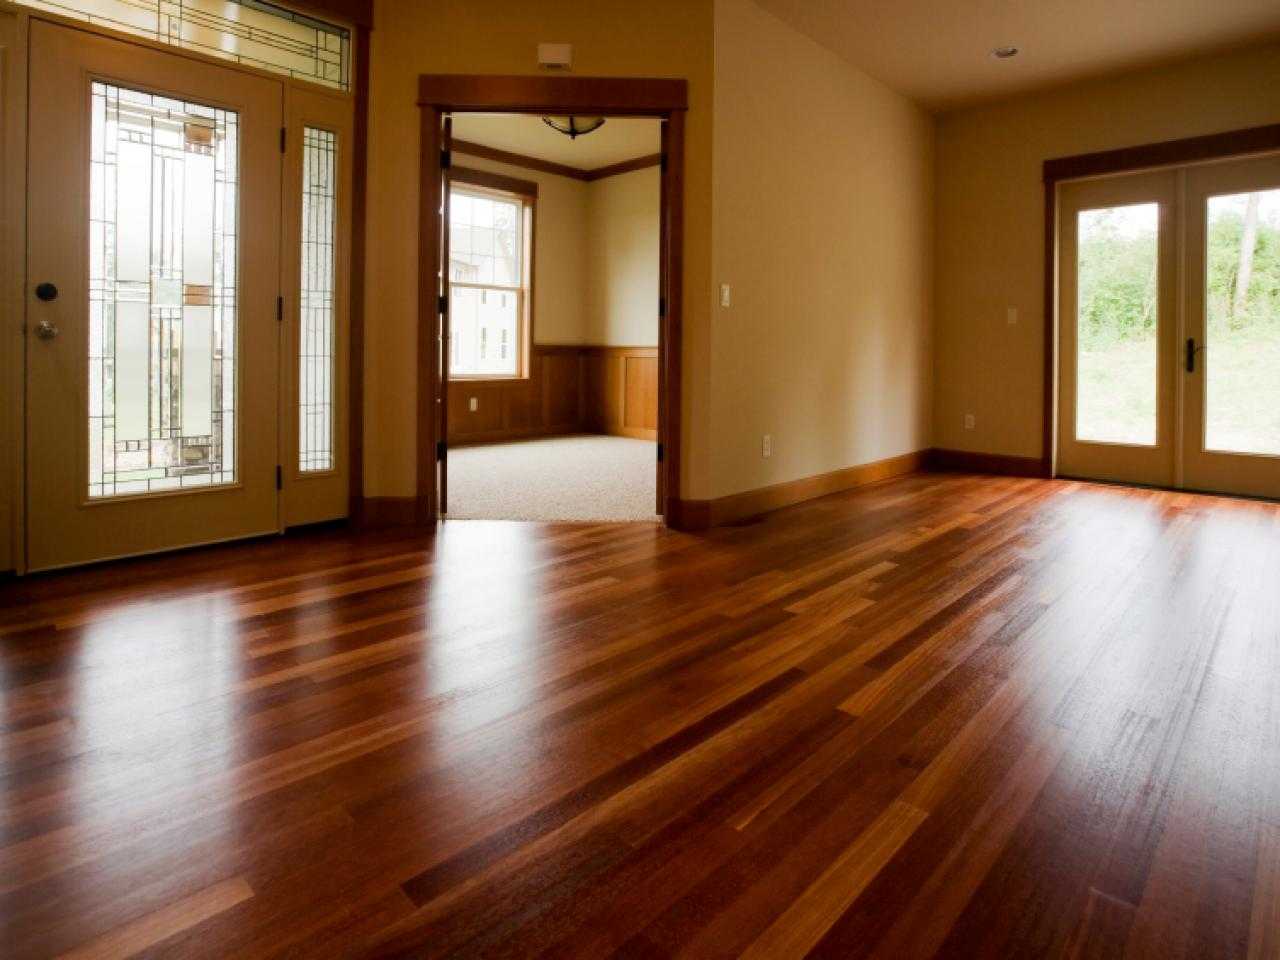 Sàn gỗ Căm Xe là một vật liệu thường được ứng dụng để lát sàn nhà cao cấp